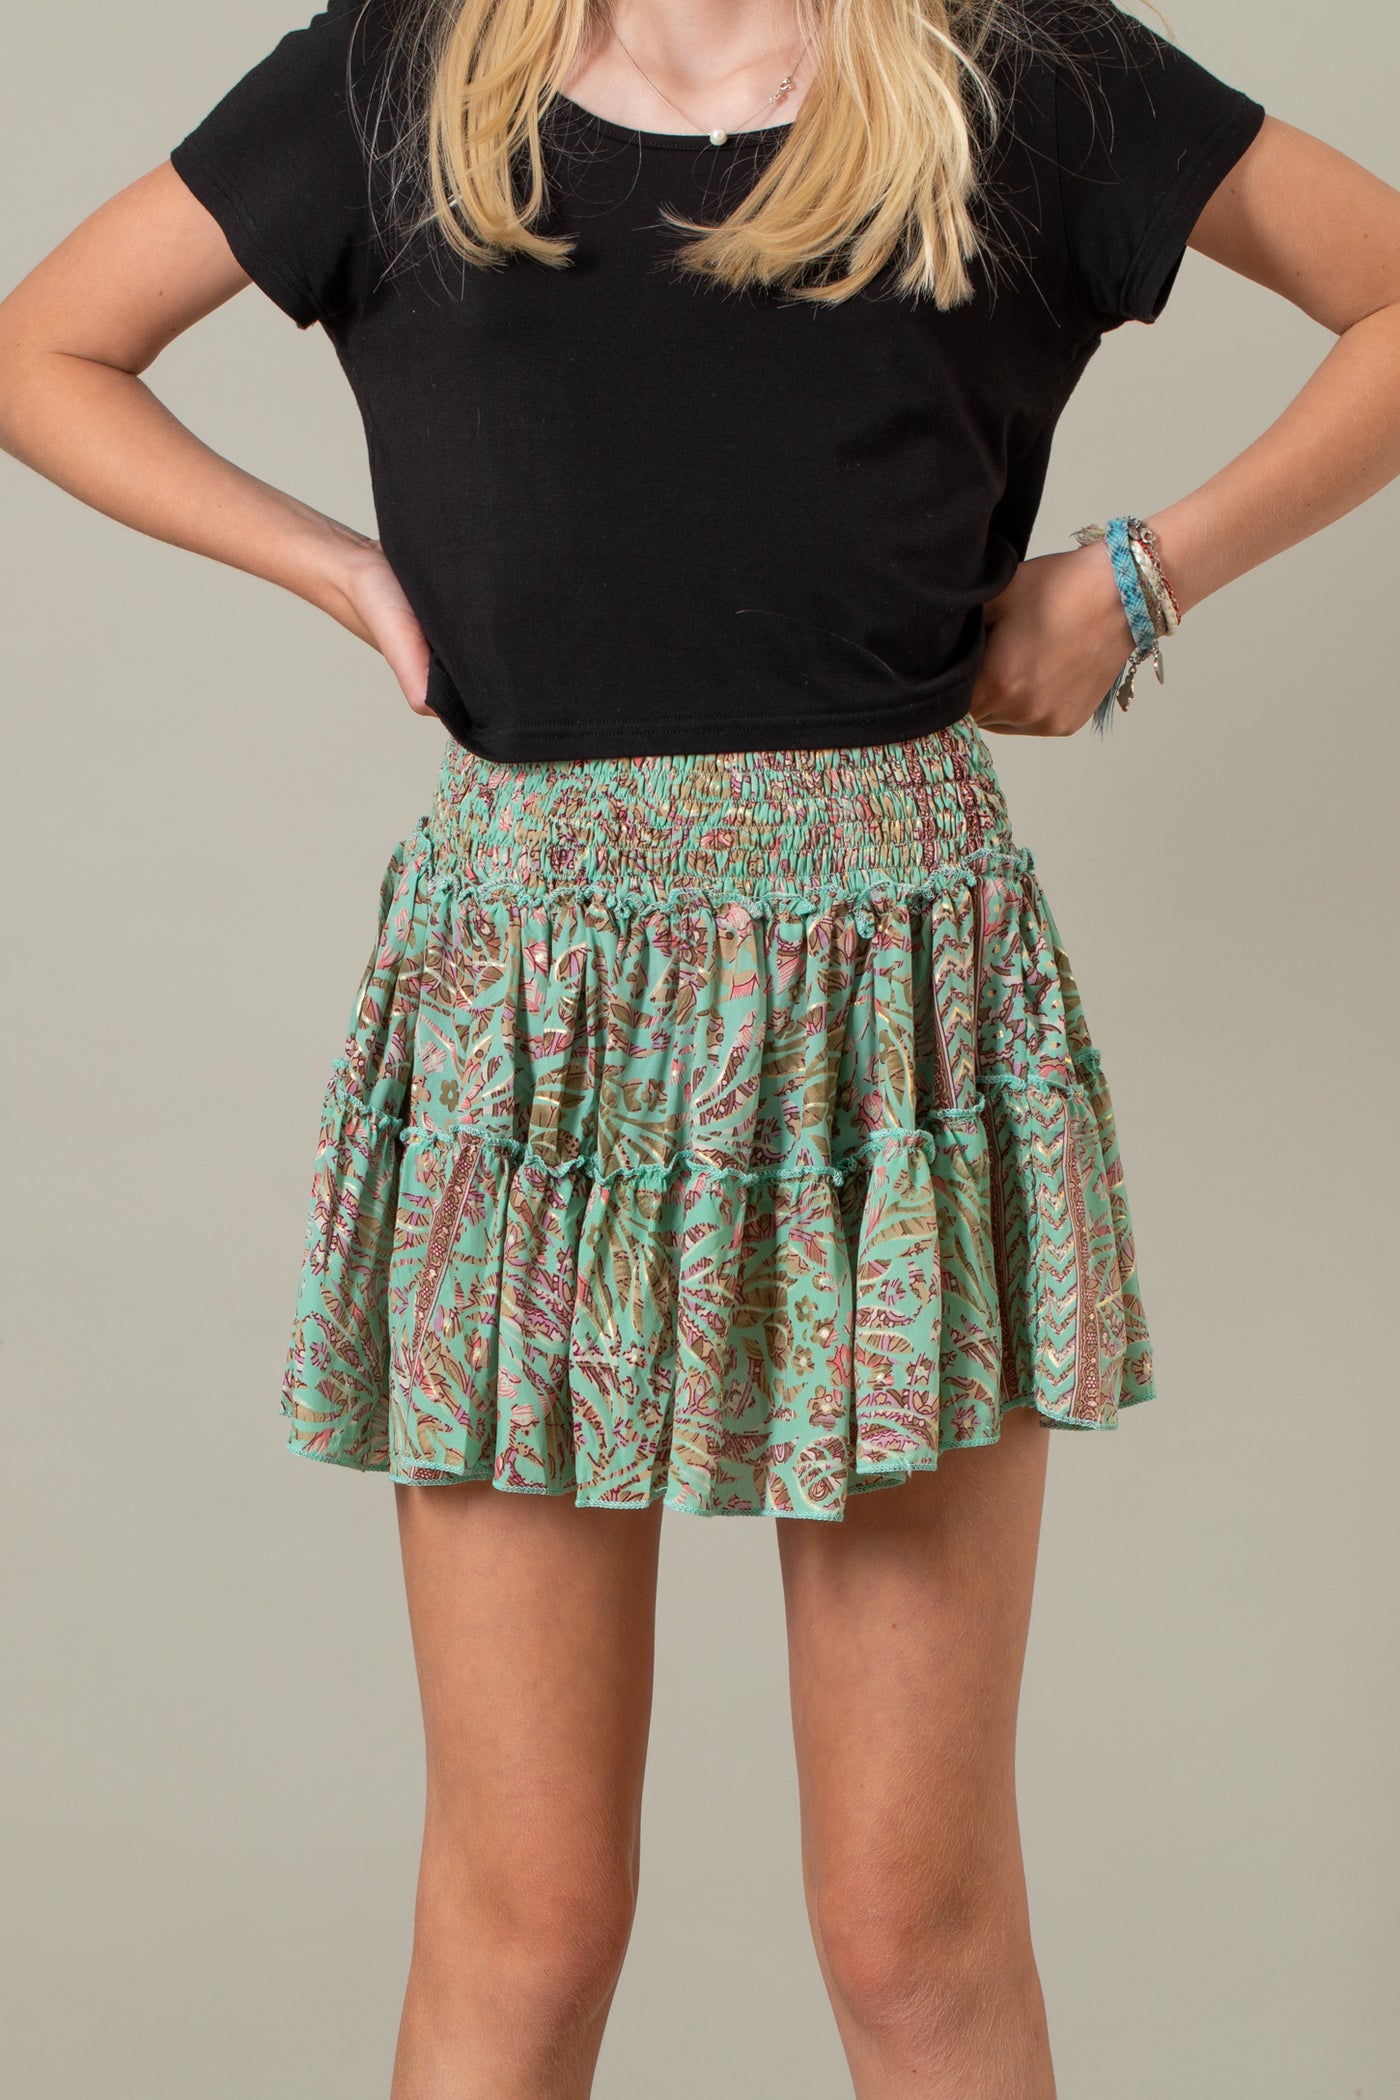 Flower Child Skirt Top